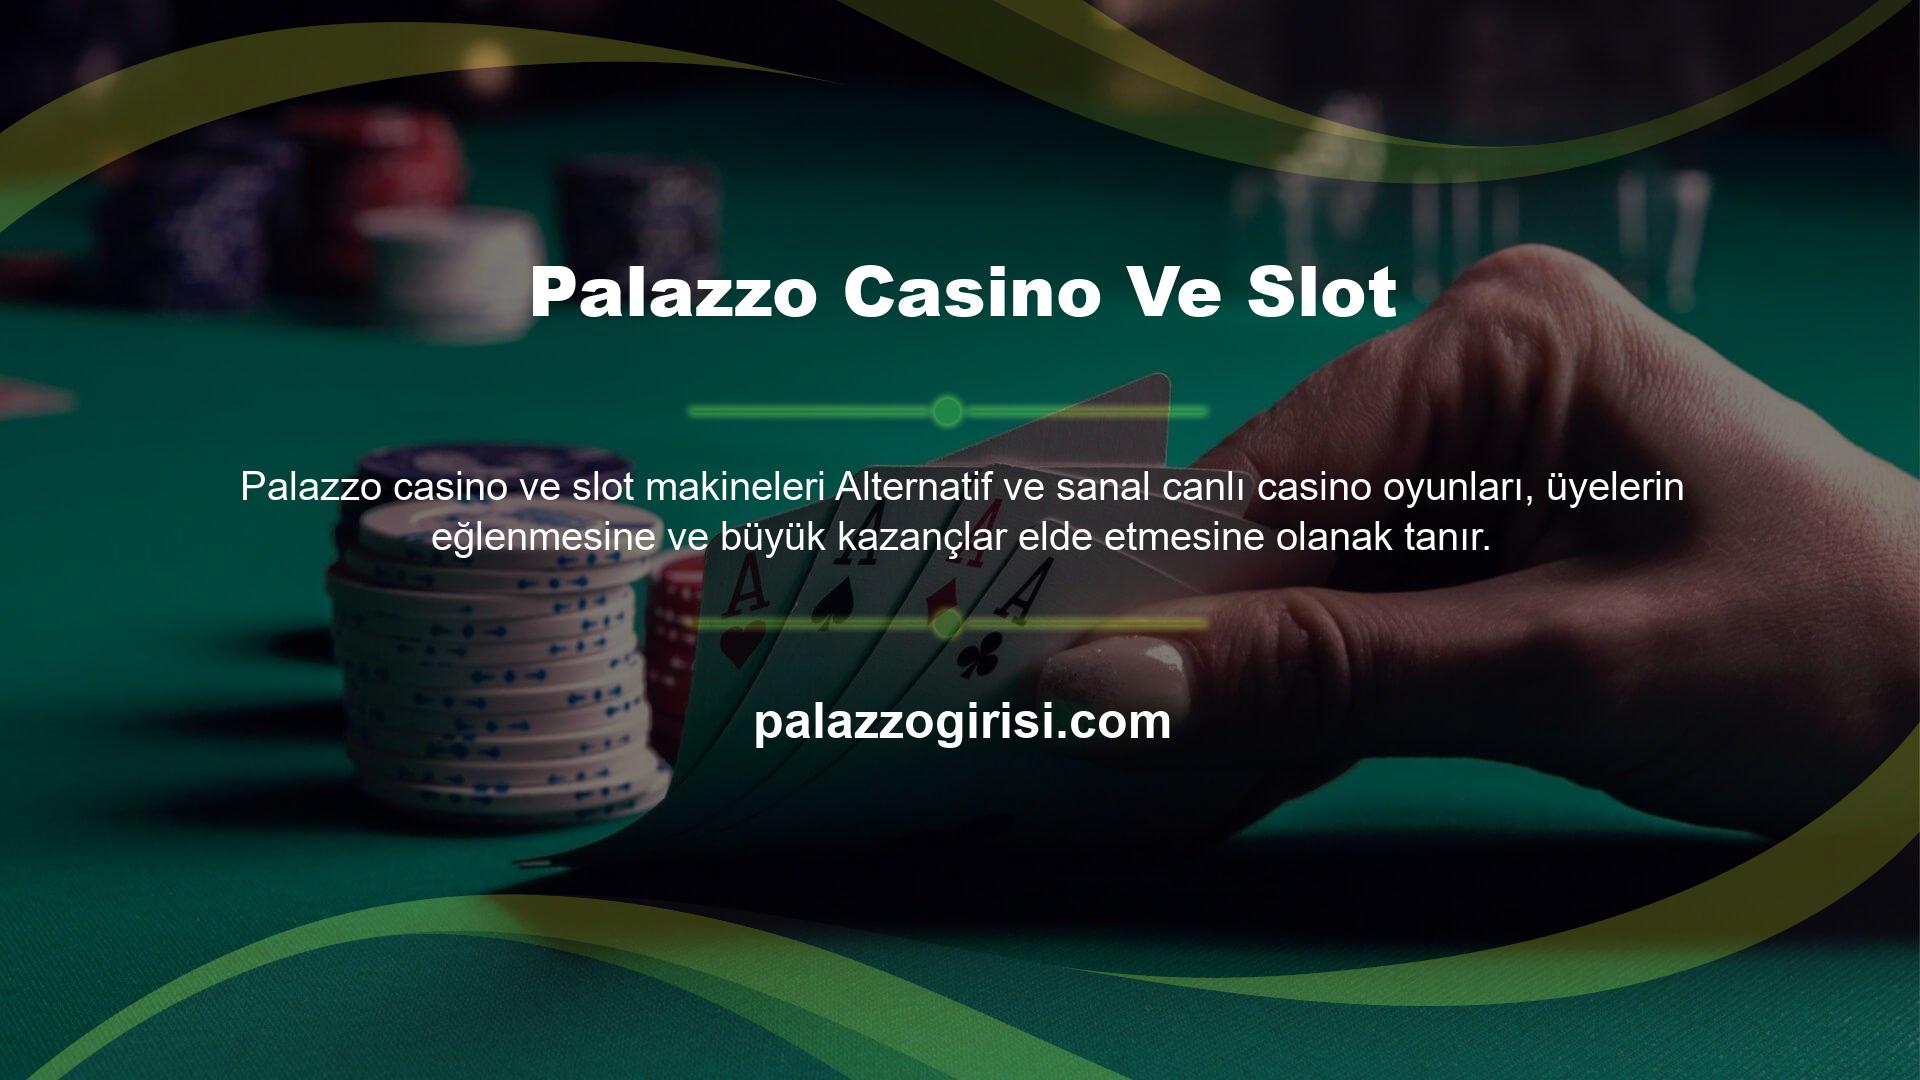 Eğlenceli ve kazançlı Palazzo casino ve slot oyunları dünyasına dalmadan önce, benzersiz bir casino deneyimi için Palazzo sunduğu tüm bonus özellikleri Palazzo casino ve slot